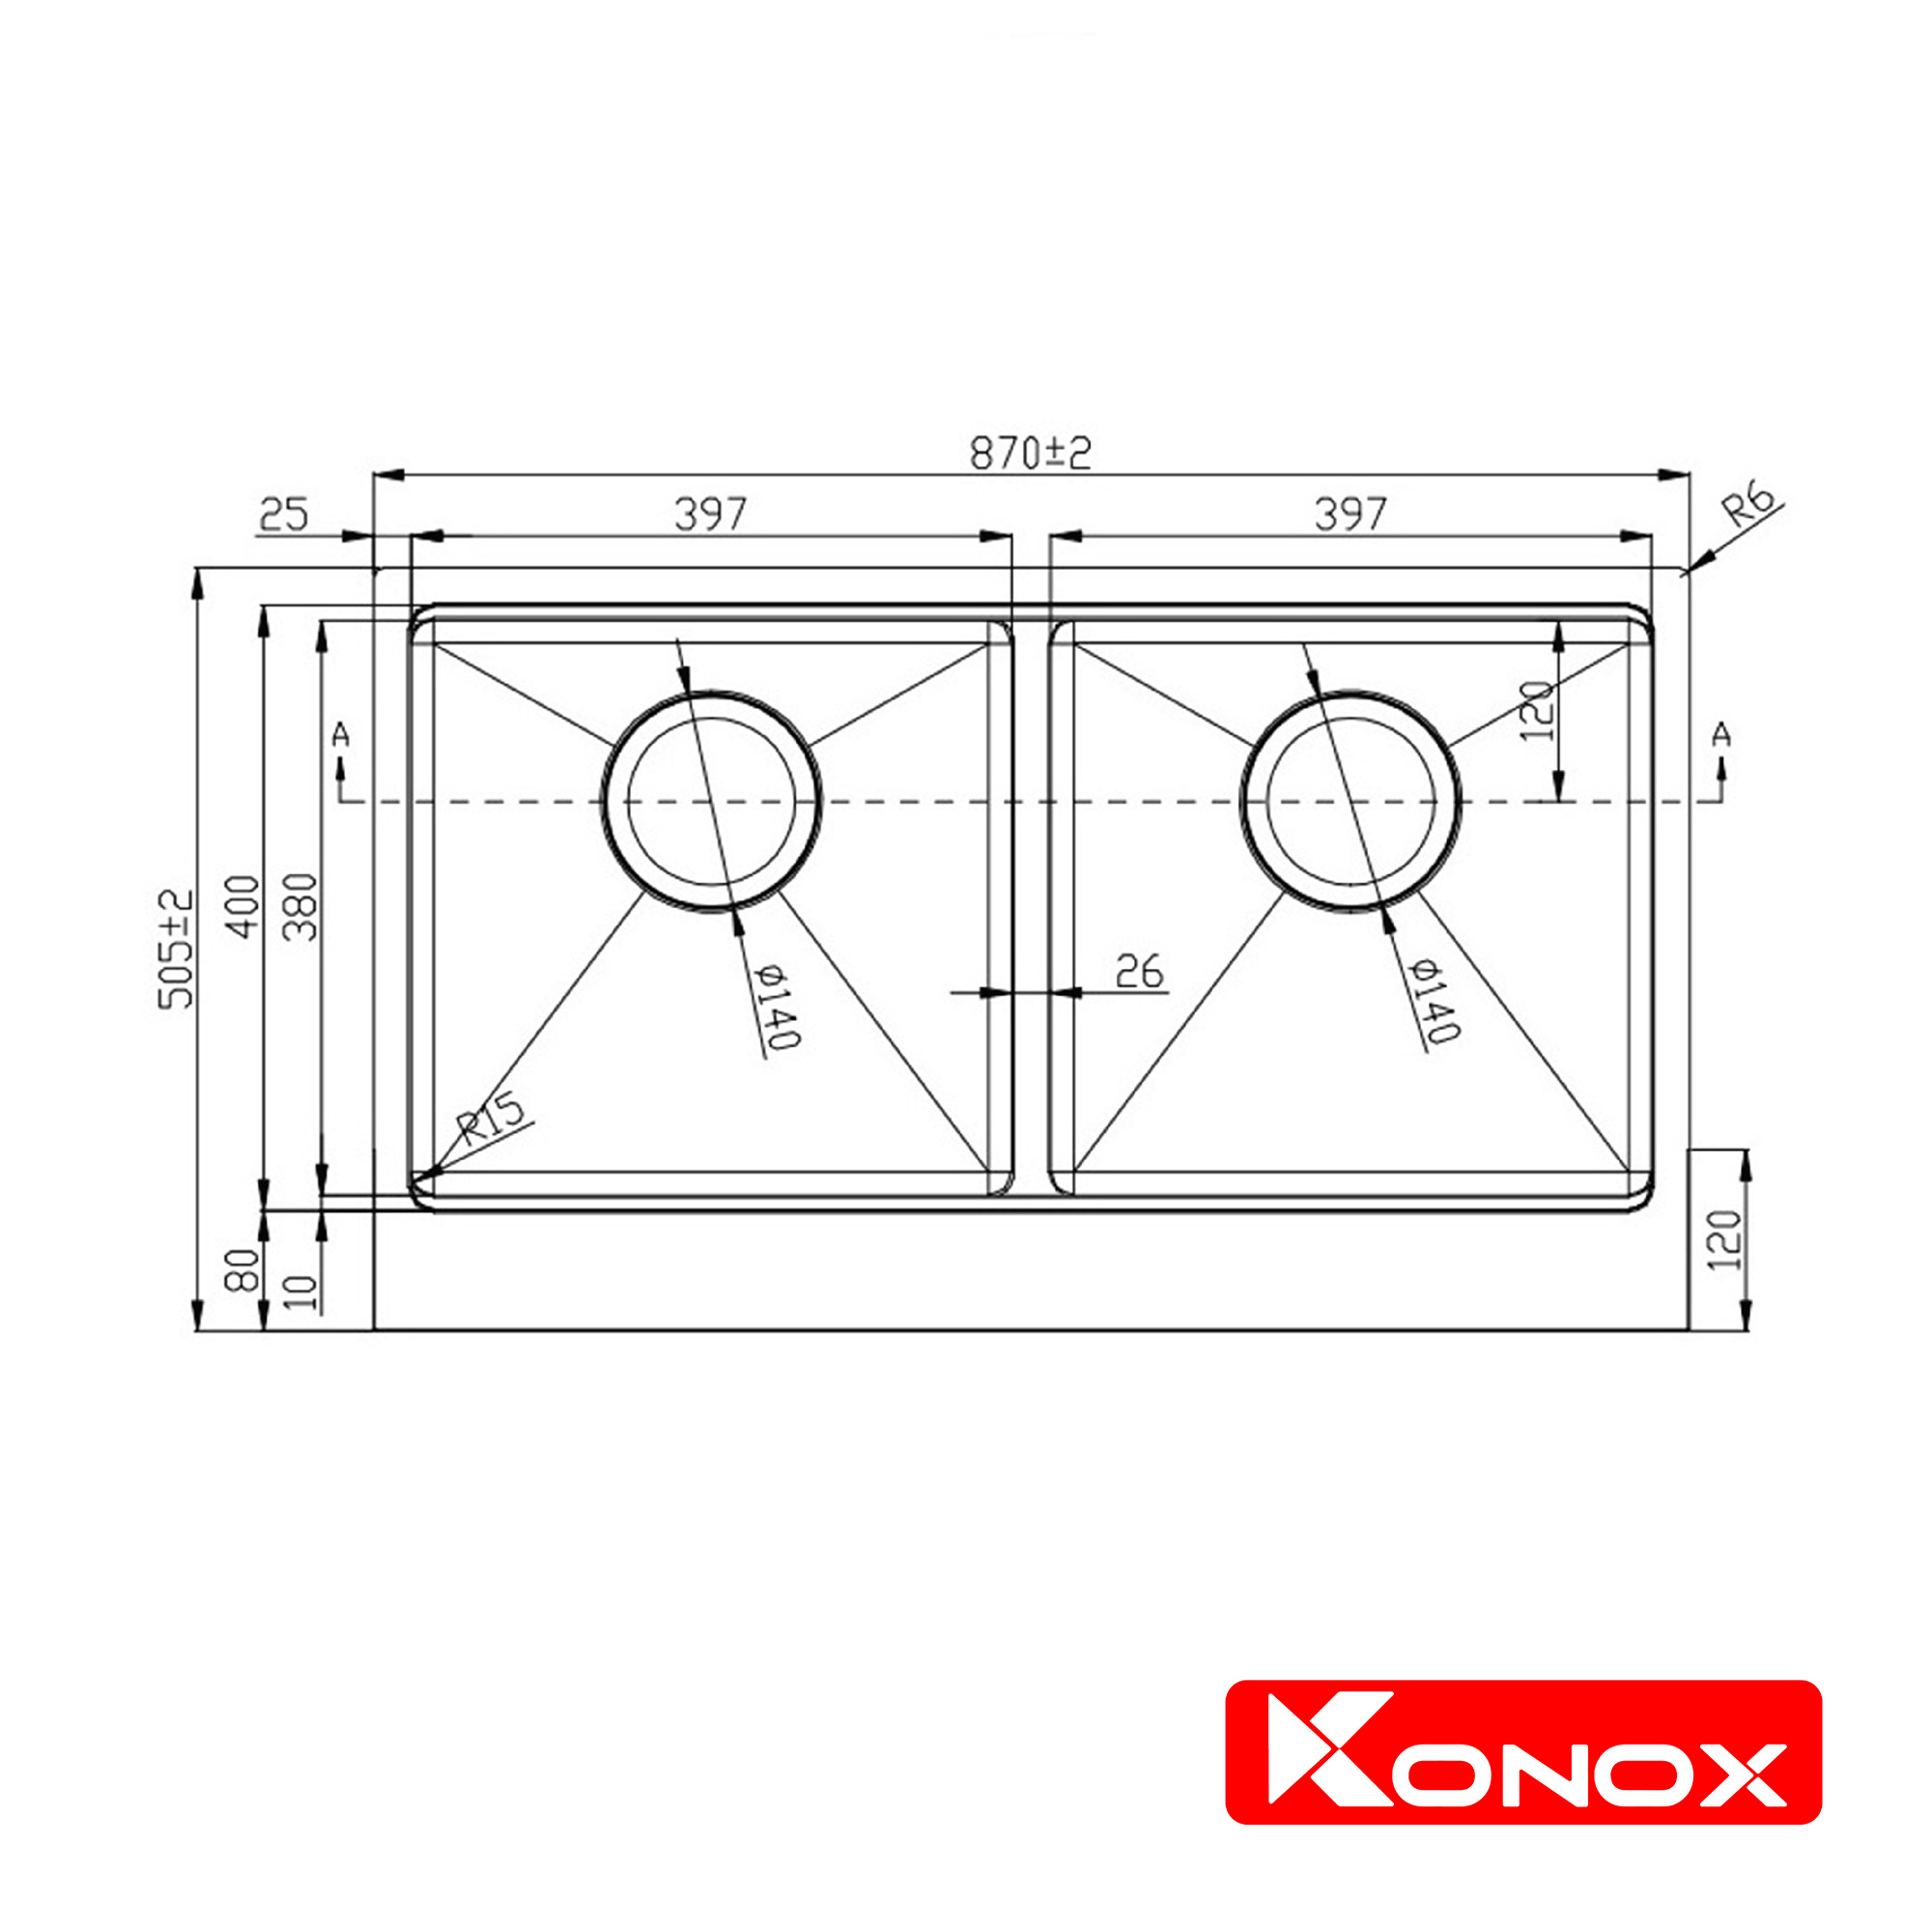 Chậu rửa bát Konox, Apron Series, Model KN8750DA, Inox 304AISI tiêu chuẩn châu Âu, Hạ bậc tích hợp, 870x505x220(mm), Full set gồm thớt gỗ, Roll Mat, Siphon, Hàng chính hãng